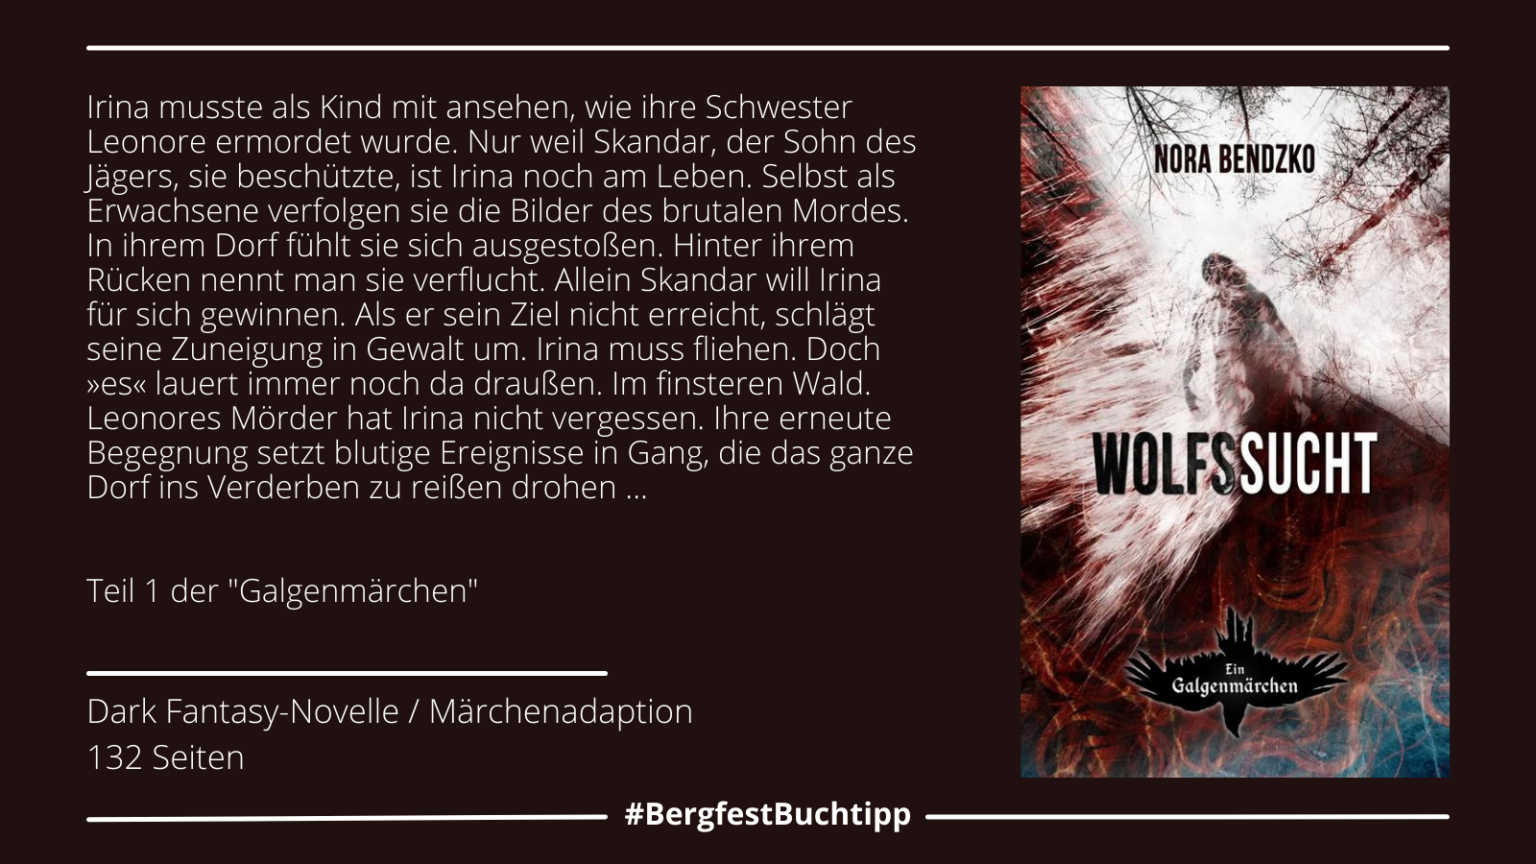 Woche 45: "Wolfssucht" von Nora Bendzko